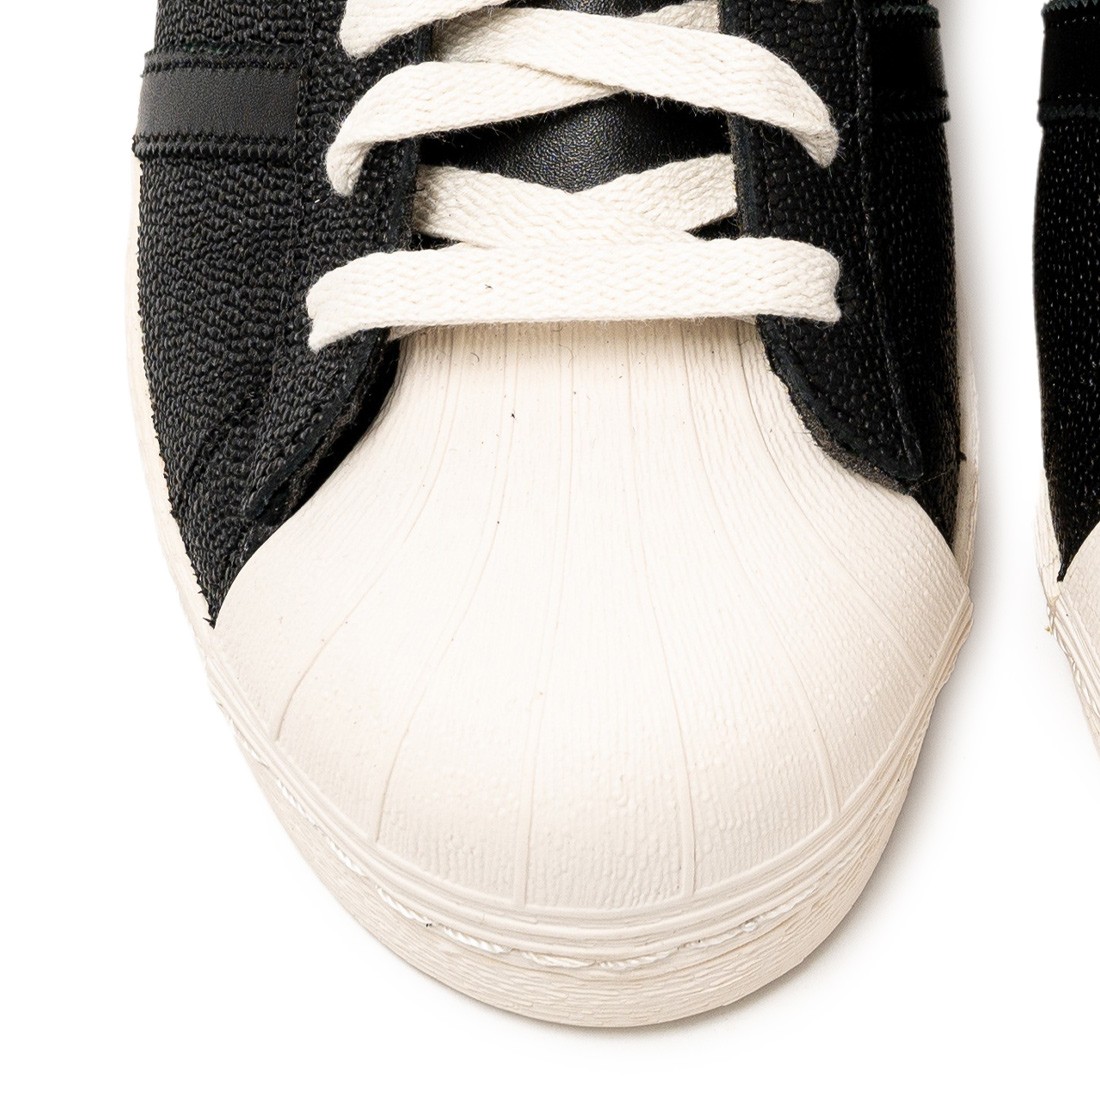 Men's shoes adidas Superstar 82 Core Black/ Core White/ Core Black